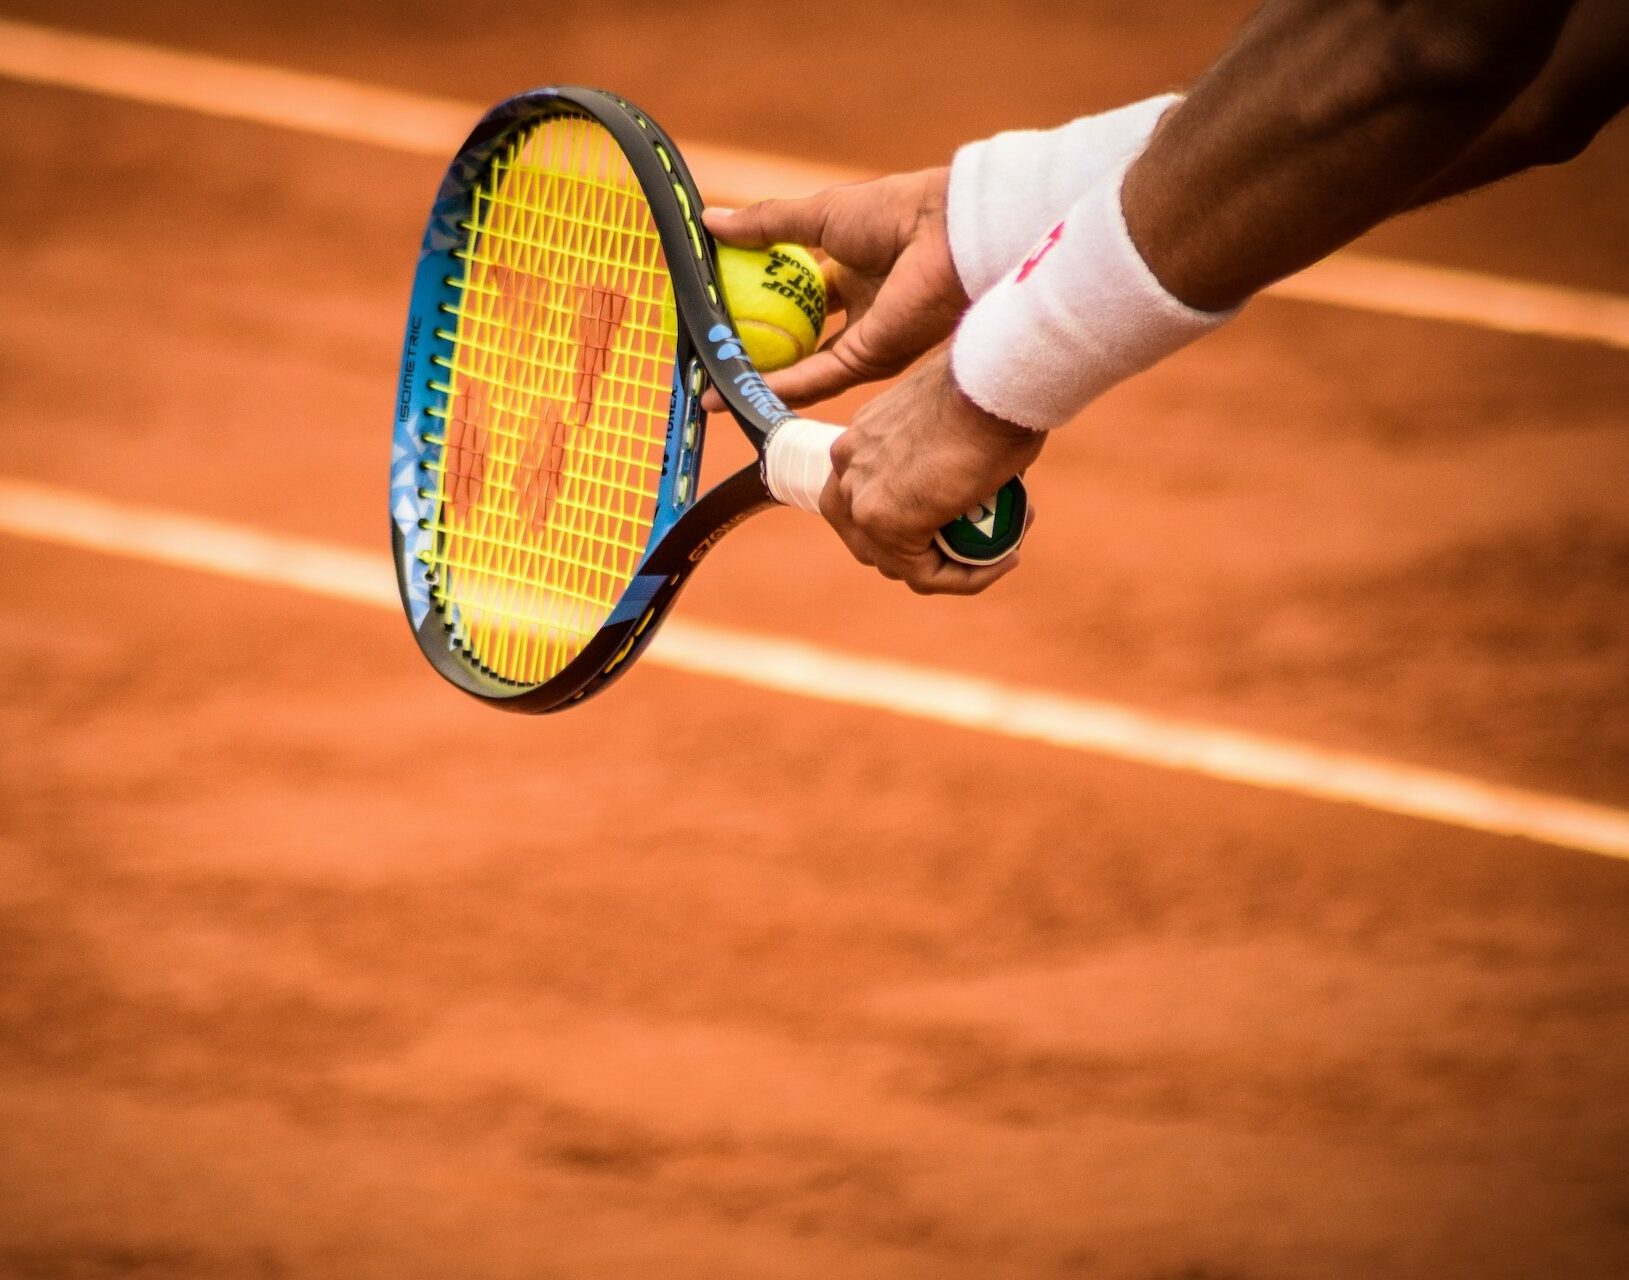 Sehnenschmerzen können beim Tennisspielen aufgrund der wiederholten Belastung auftreten. Erfahren Sie hier mehr über präventive Maßnahmen